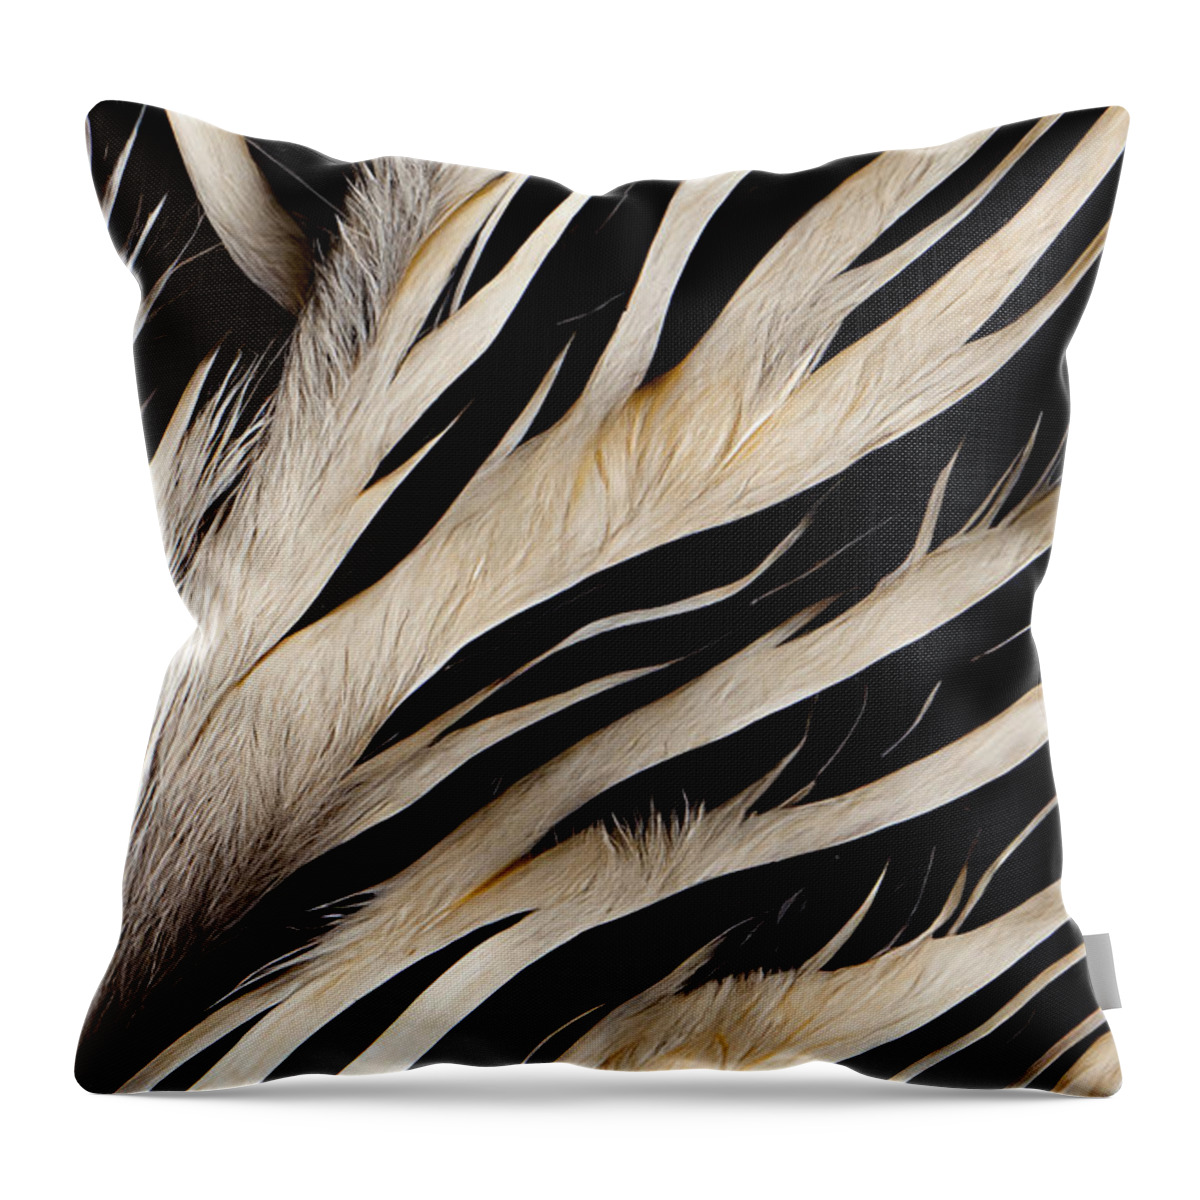 Zebra Throw Pillow featuring the digital art Love zebras by Sabantha